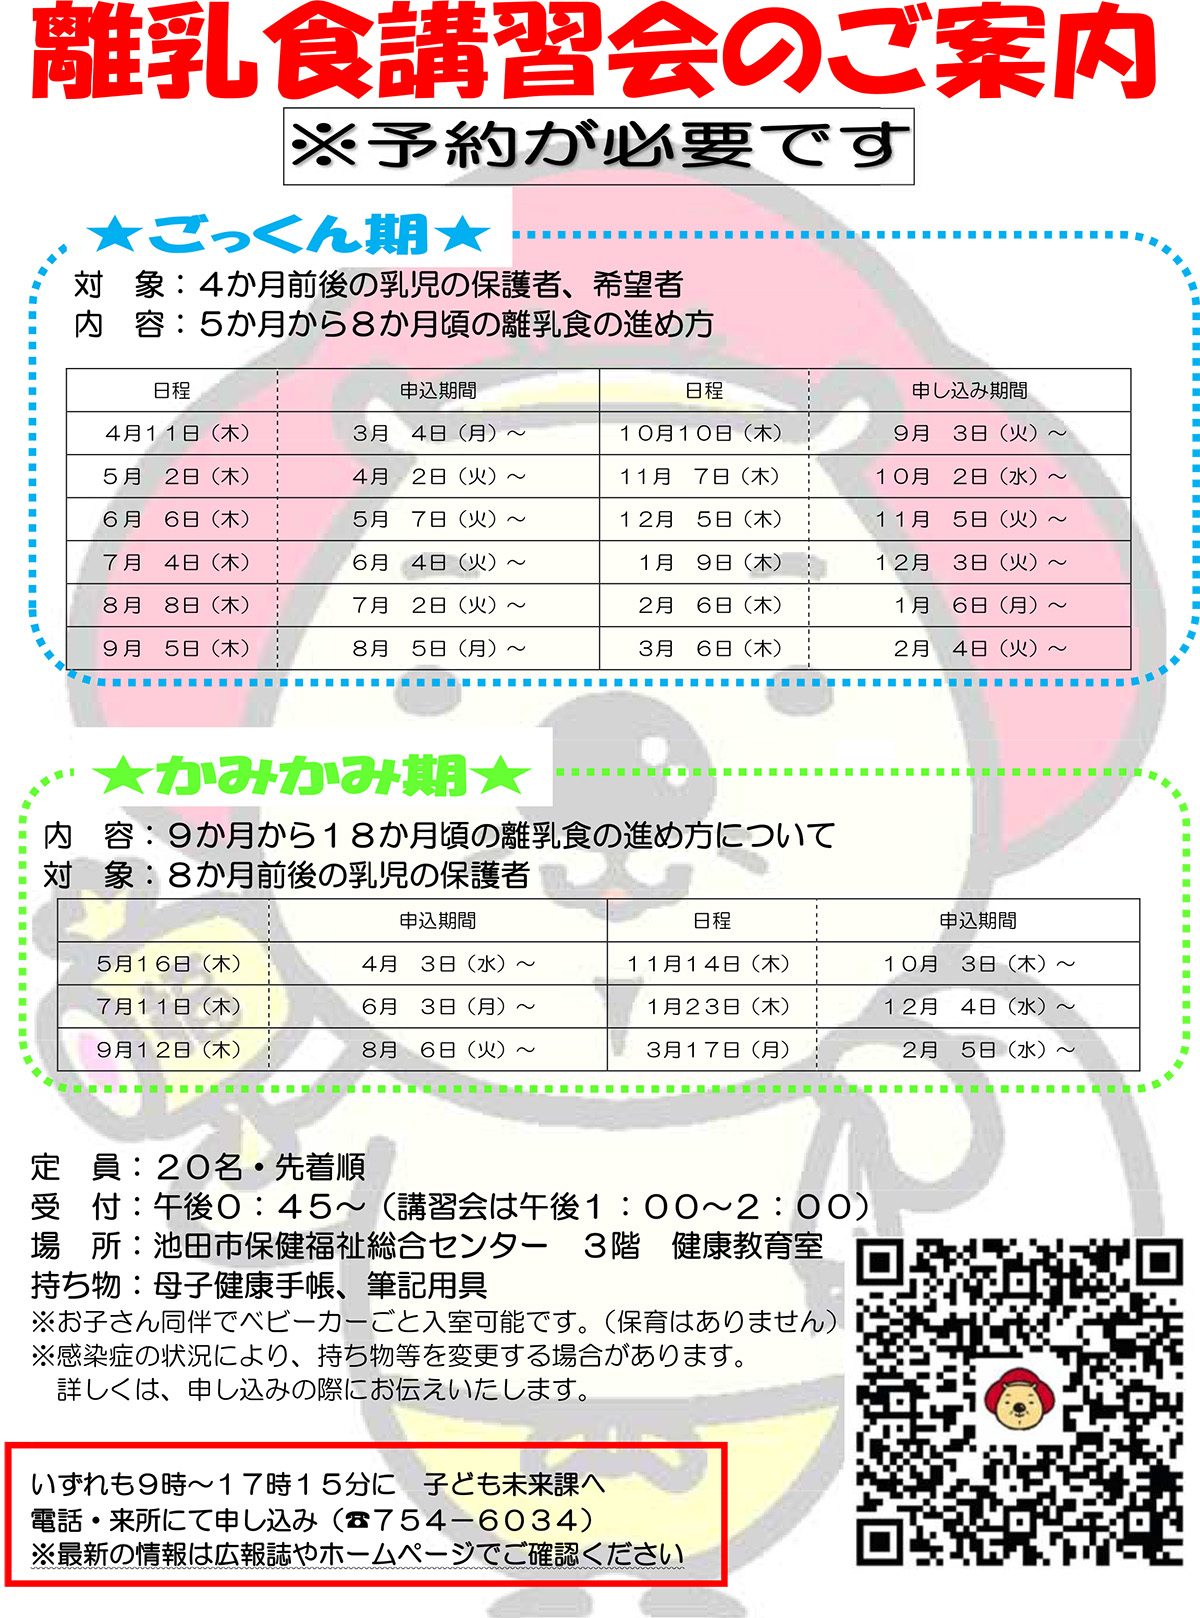 【予約制】離乳食講習会 5月2日開催ごっくん期